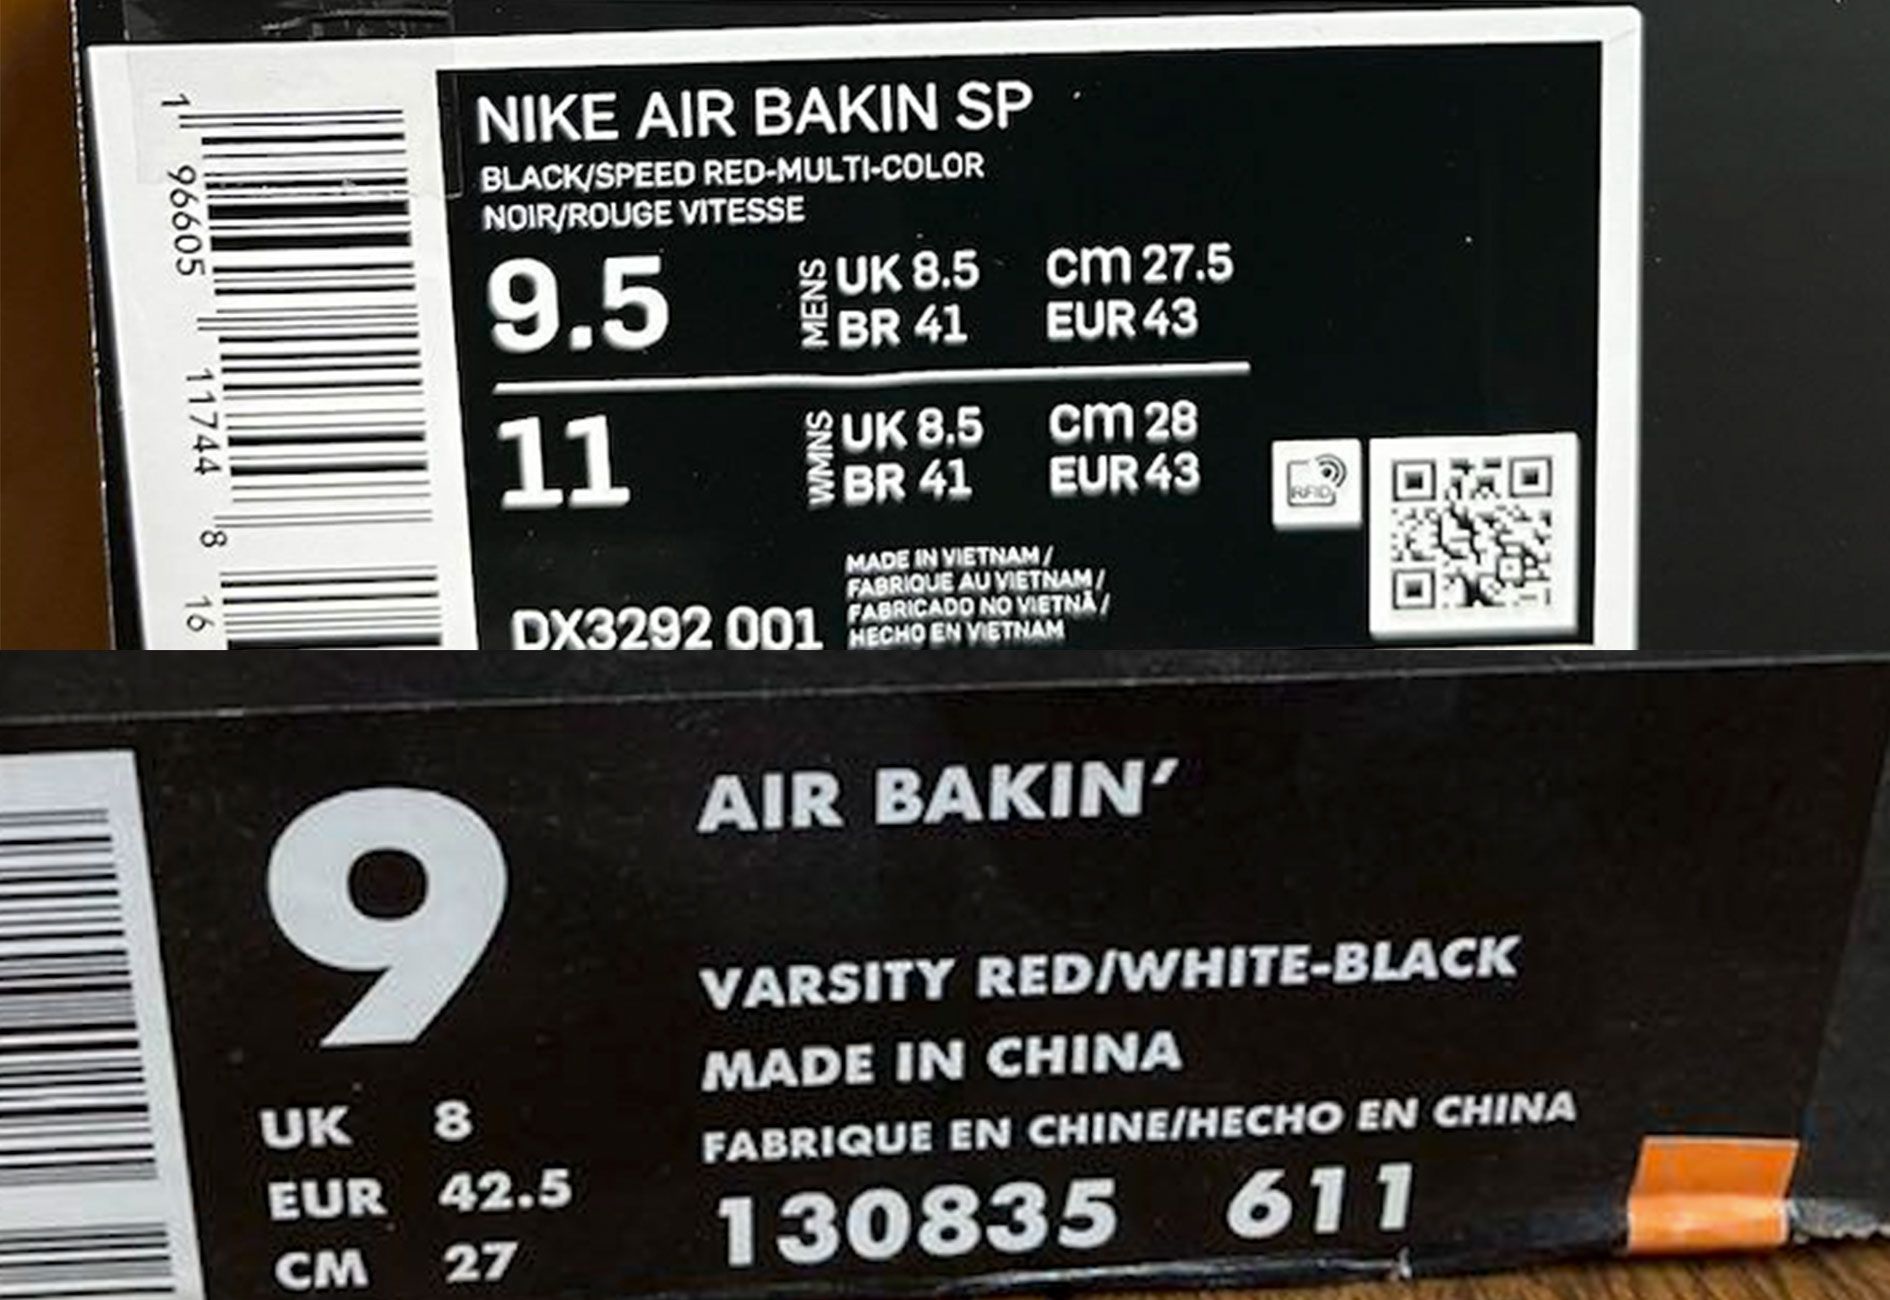 Nike Air Bakin’ apostrophe